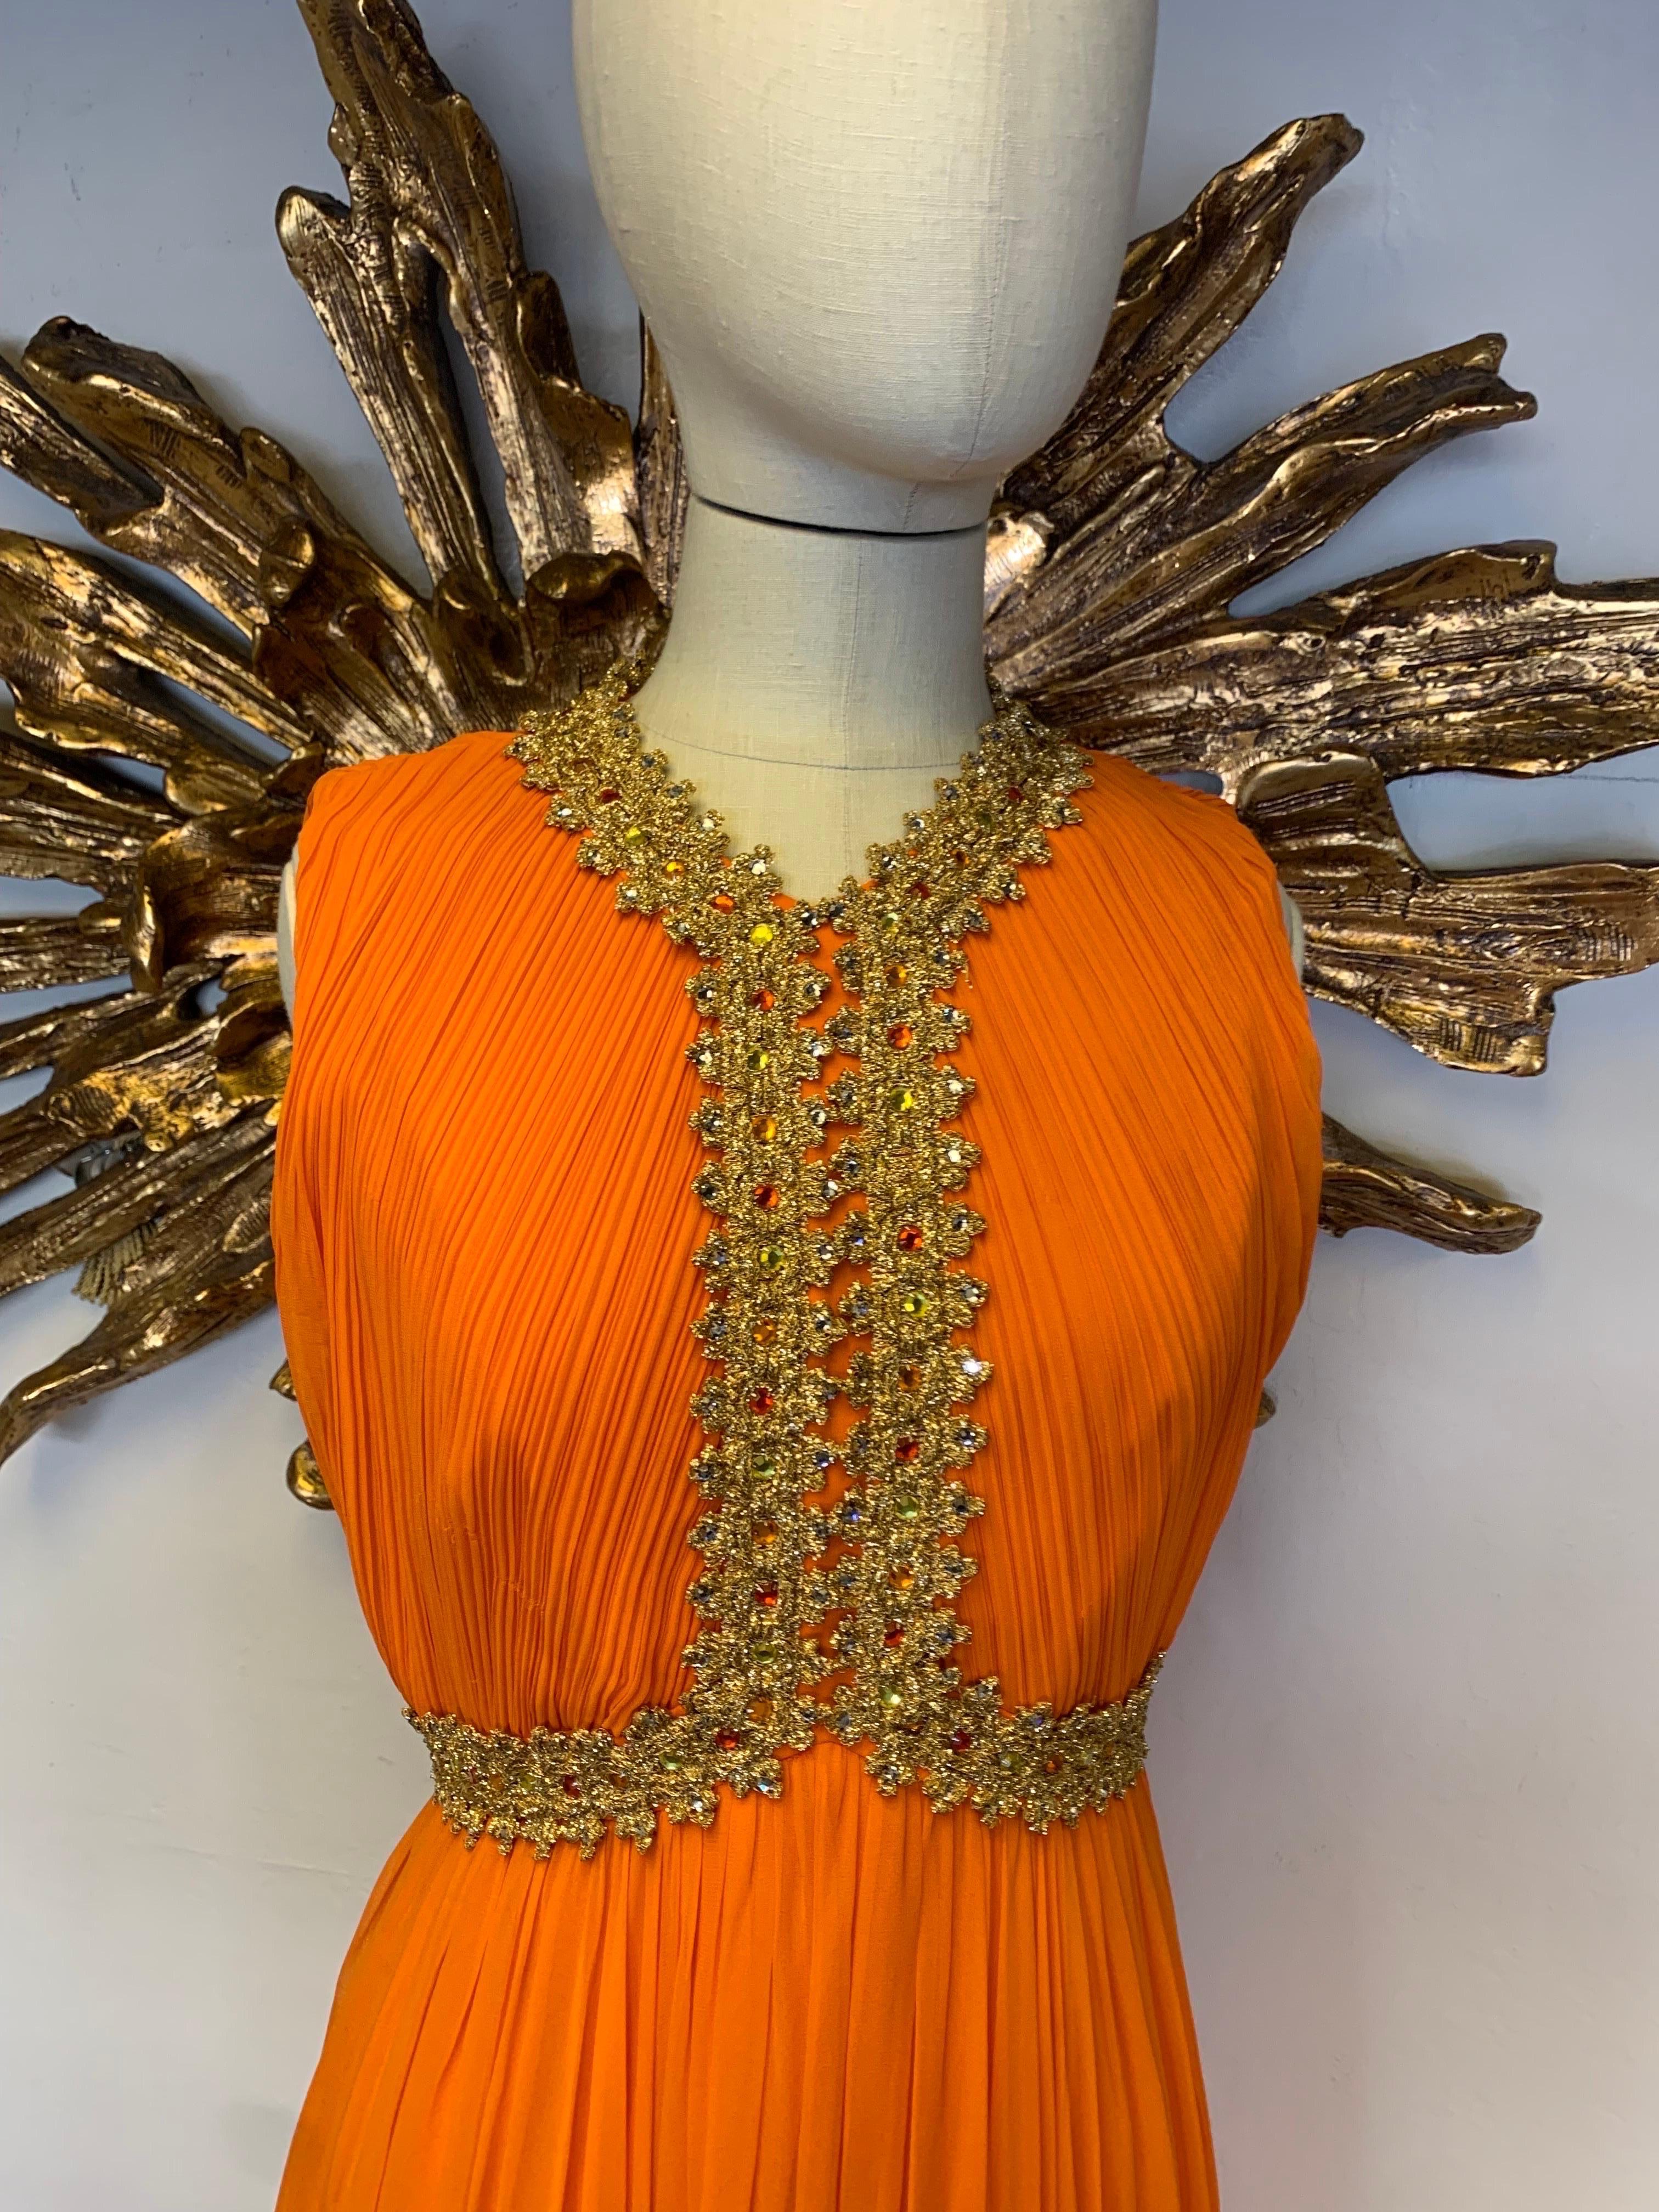 1960s Amen Wardy Orange Knife-Pleated Goddess Gown with Jeweled Neckline & Waist For Sale 3